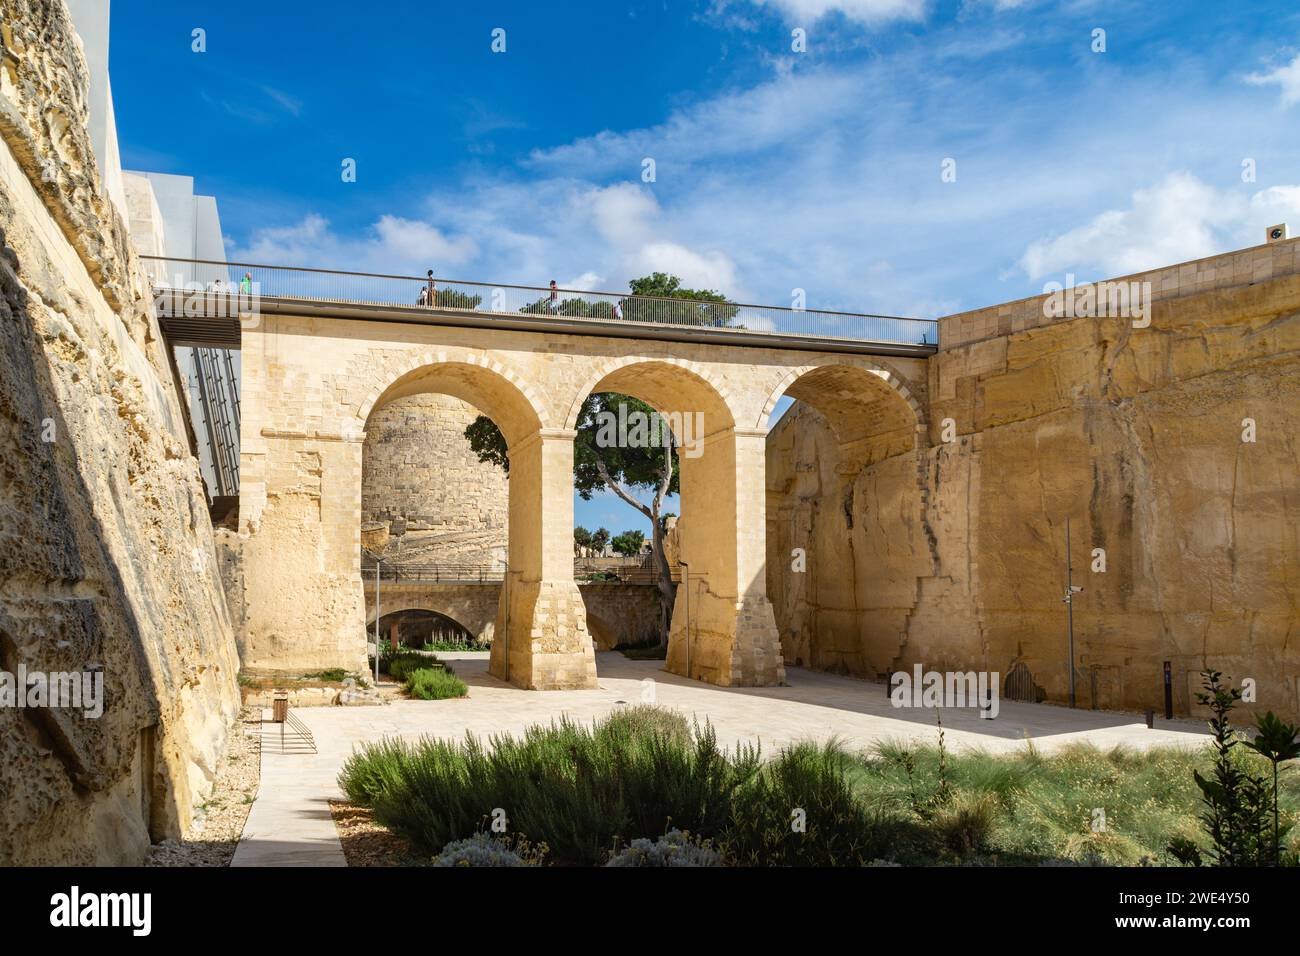 La Valette, Malte - 1 juin 2020 : vue de l'intérieur du Grand fossé de la Valette du pont de la porte de la ville, du pont ferroviaire et du bastion Saint James. Banque D'Images